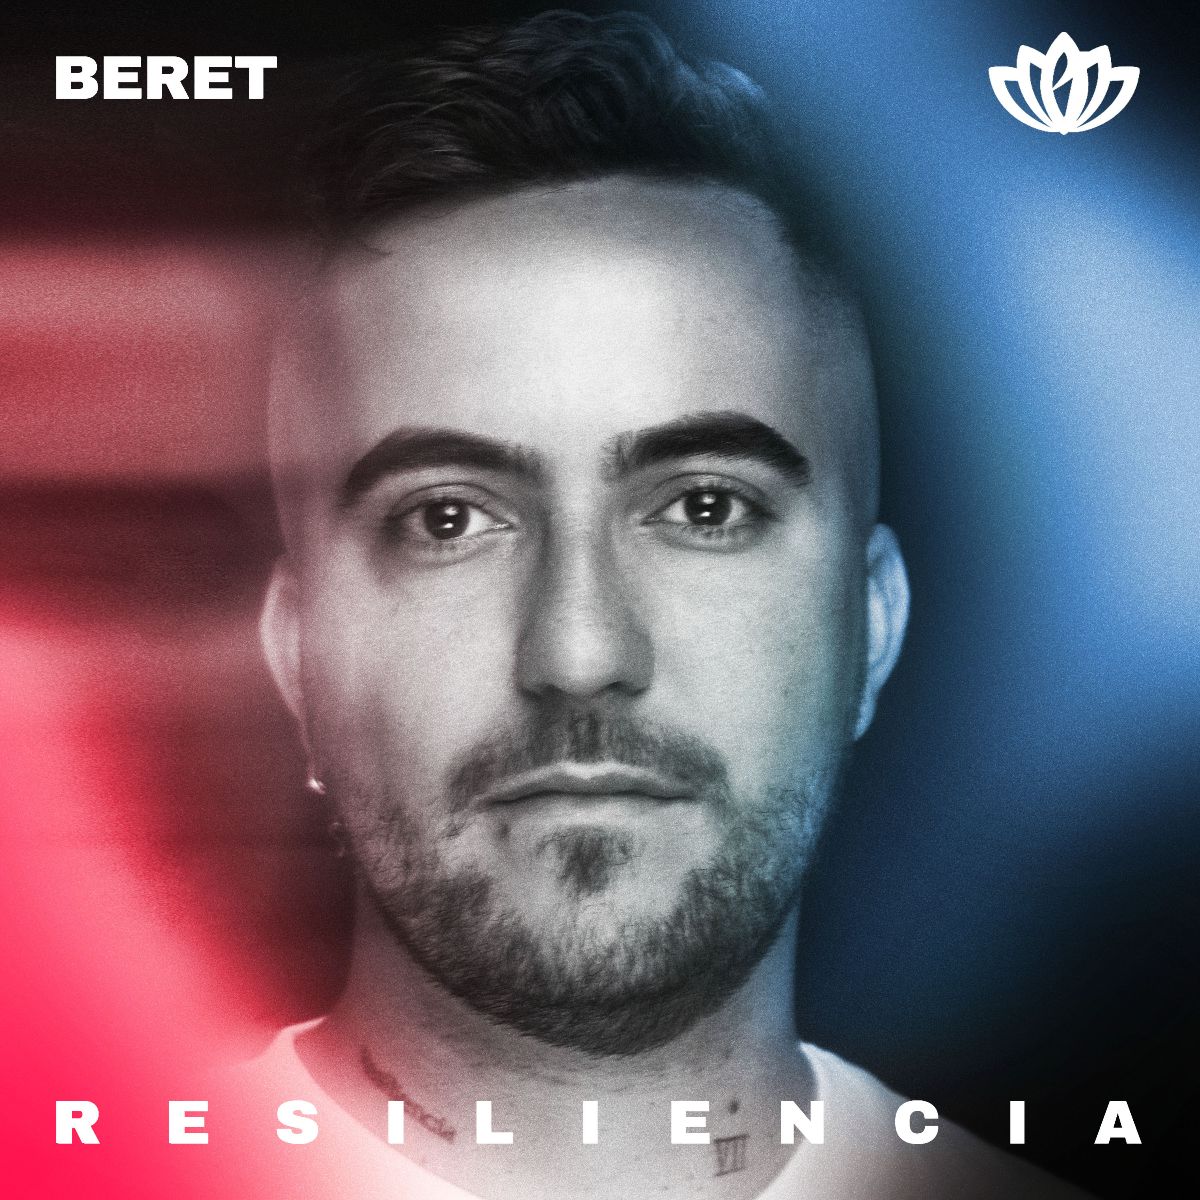 BERET lanza su nuevo tema “Resiliencia”